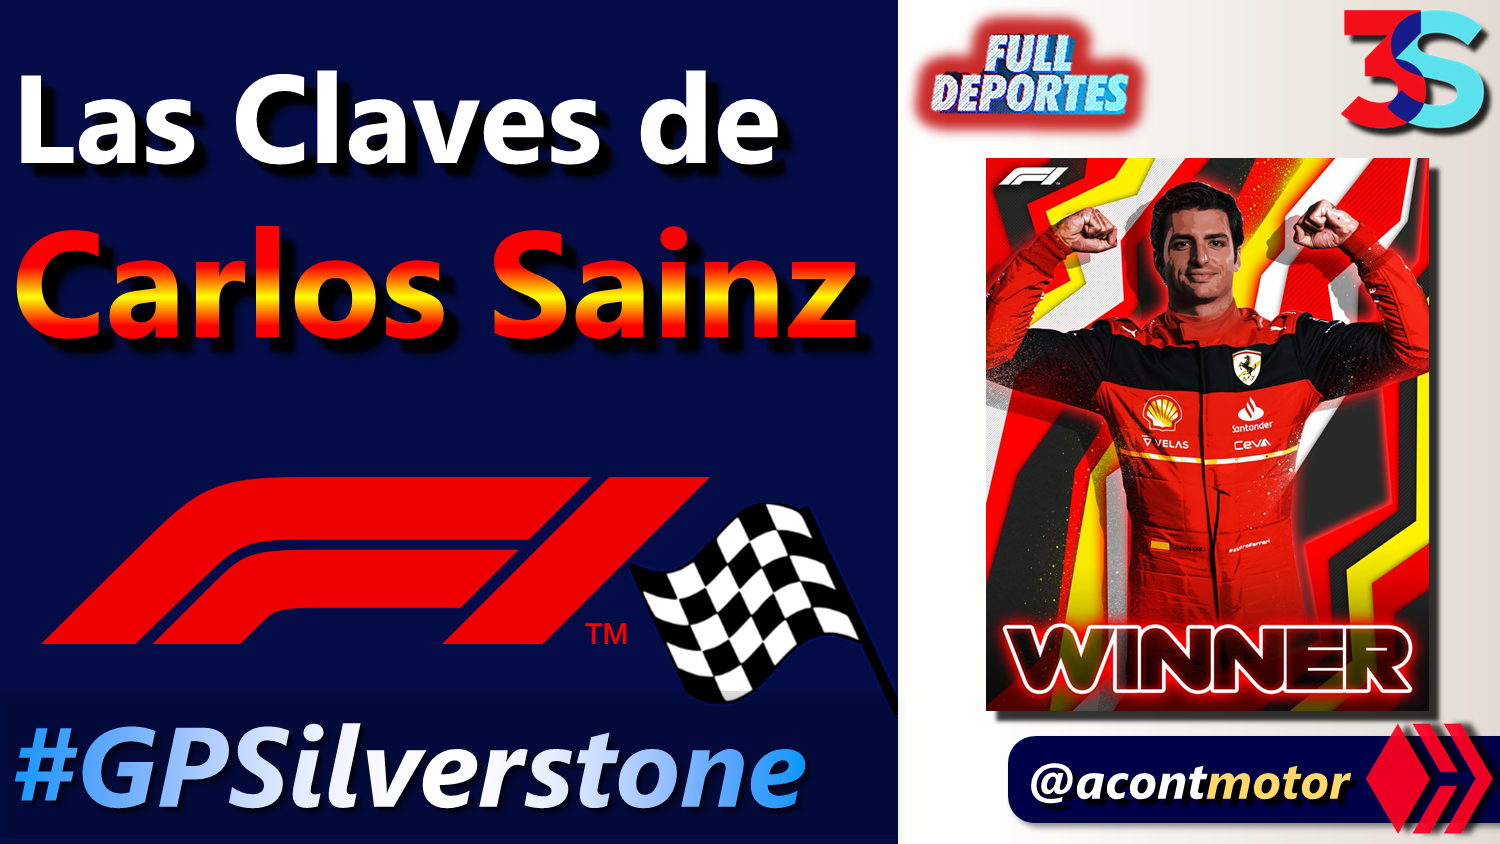 Las Claves de Carlos Sainz Full Deportes Hive acontmotor.png